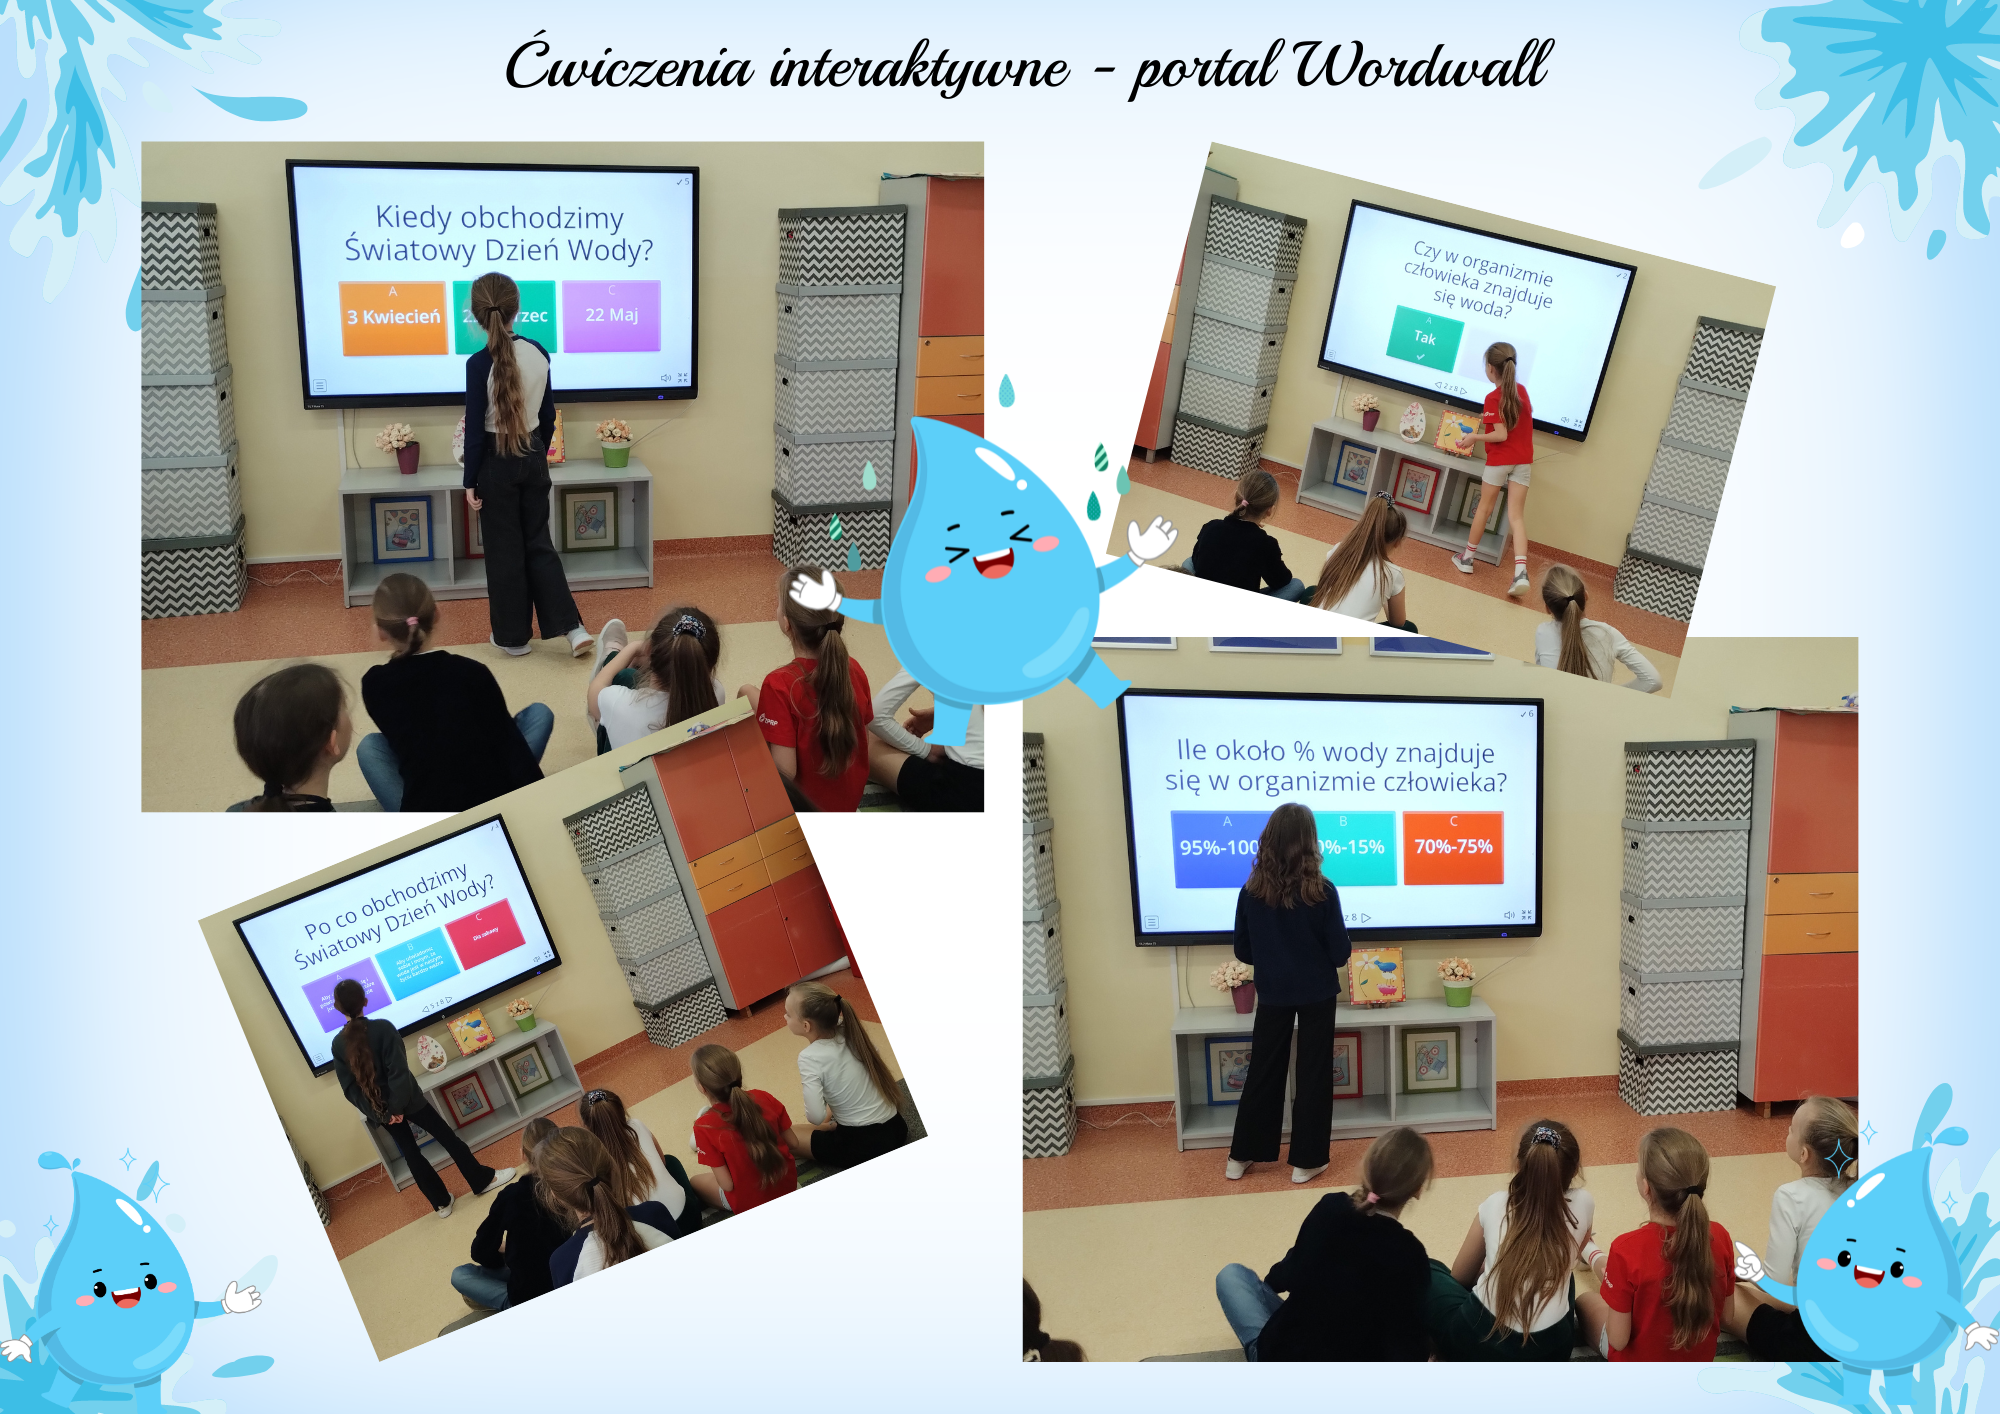 Uczniowie rozwiązują ćwiczenia interaktywne z portalu Wordwall.